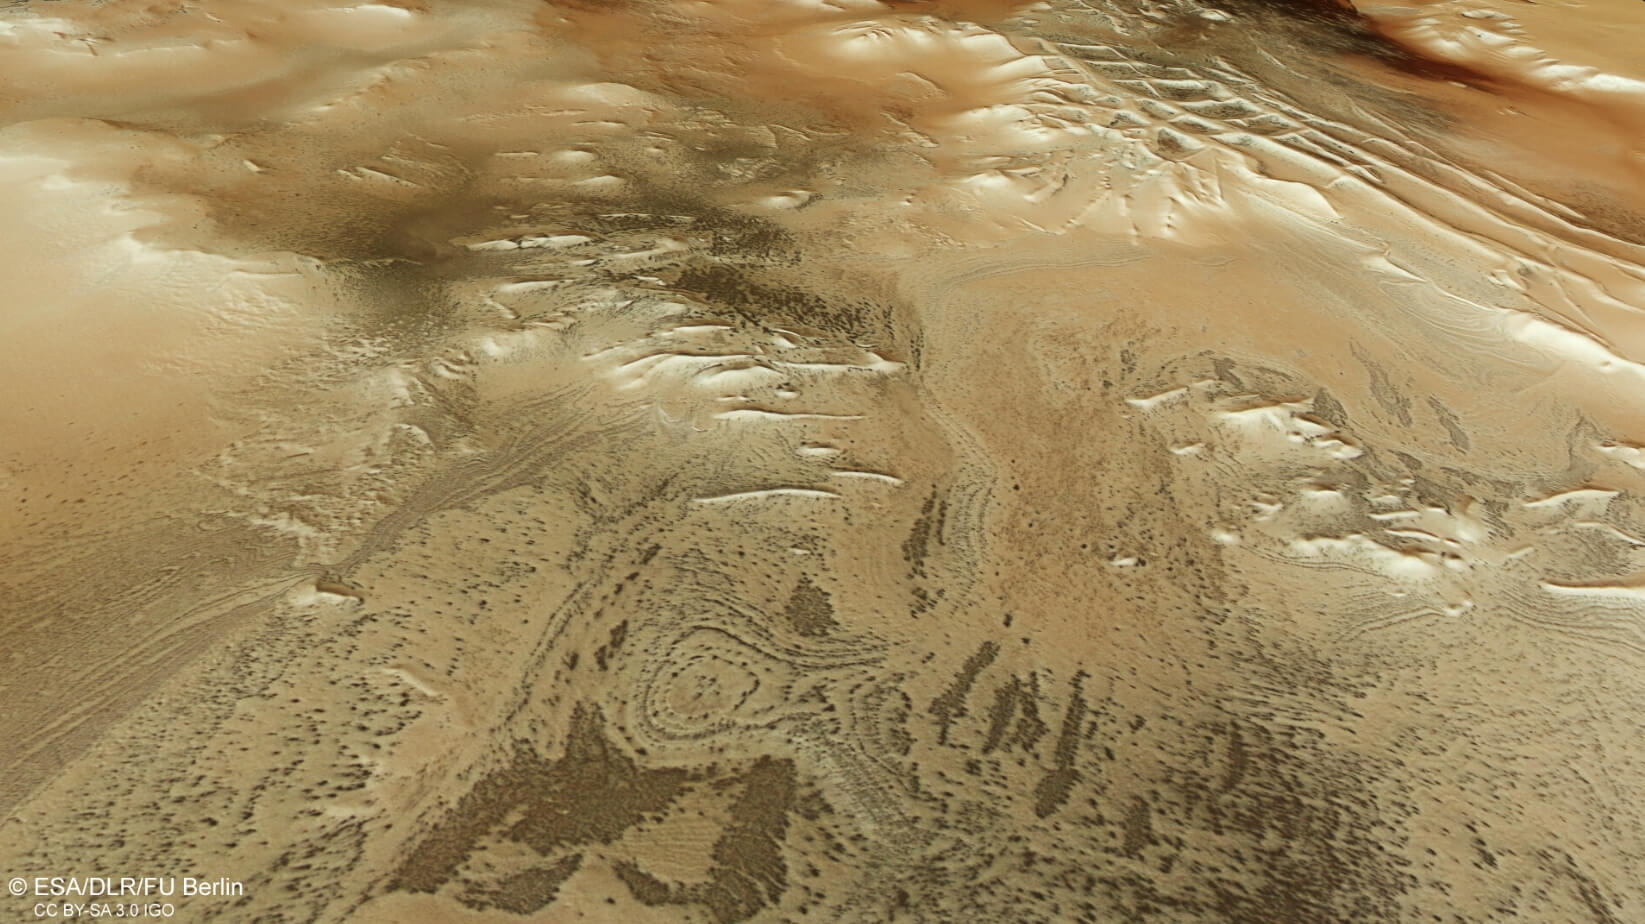 Времена года на Марсе. Другой снимок Марса, сделанный аппаратом Trace Gas Orbiter. Источник фотографии: esa.int. Фото.